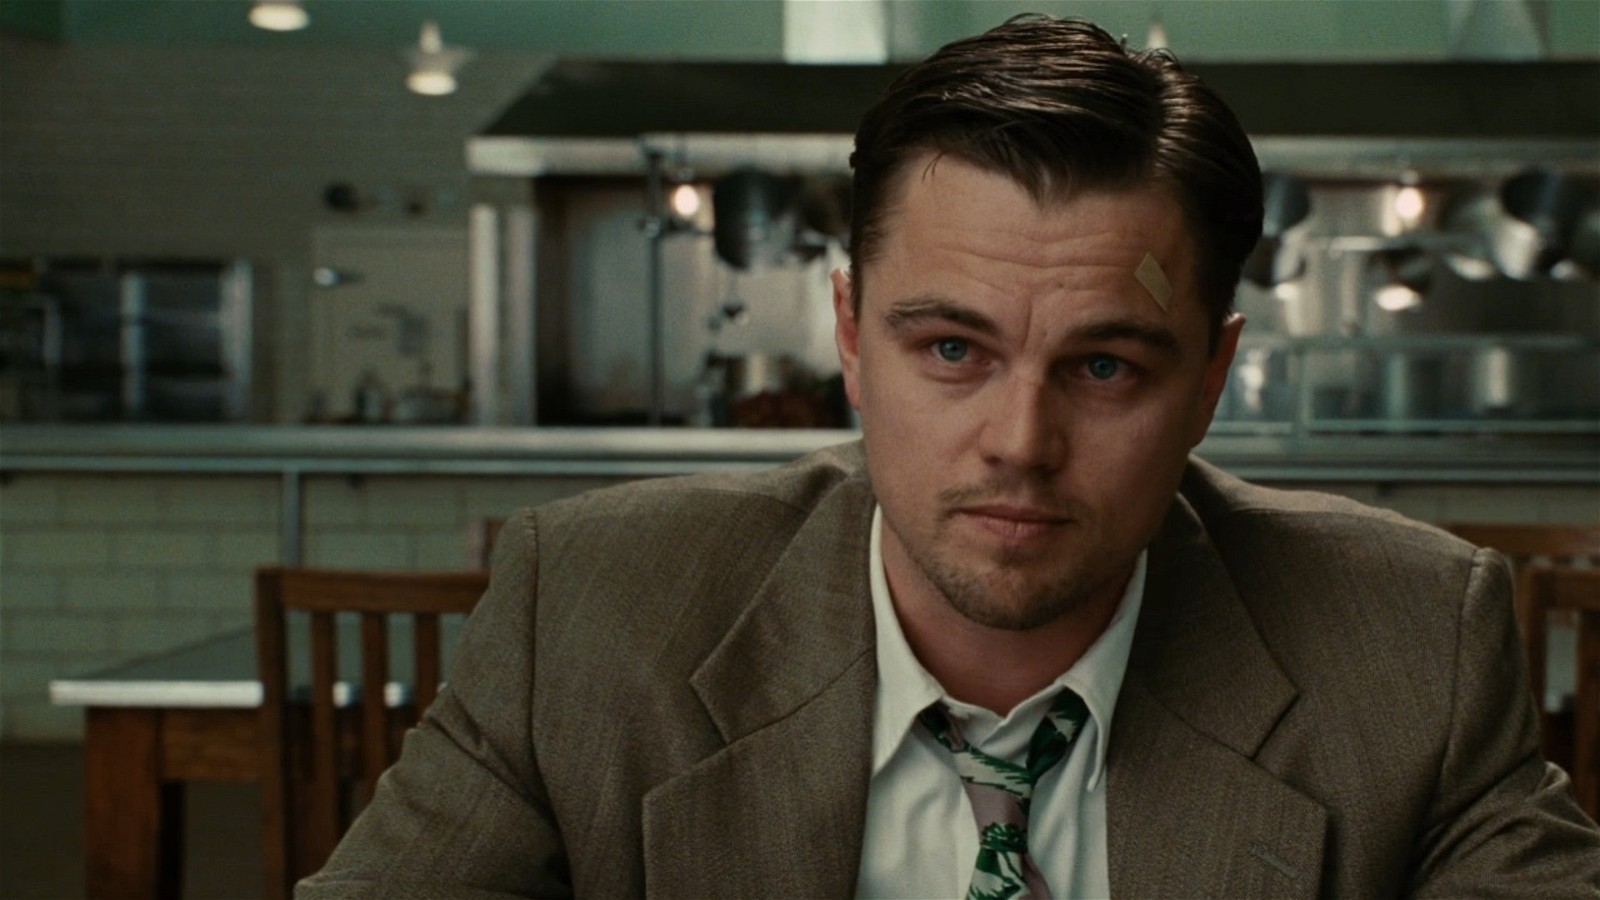 Leonardo DiCaprio as U.S. Marshall Edward “Teddy” Daniels in Shutter Island